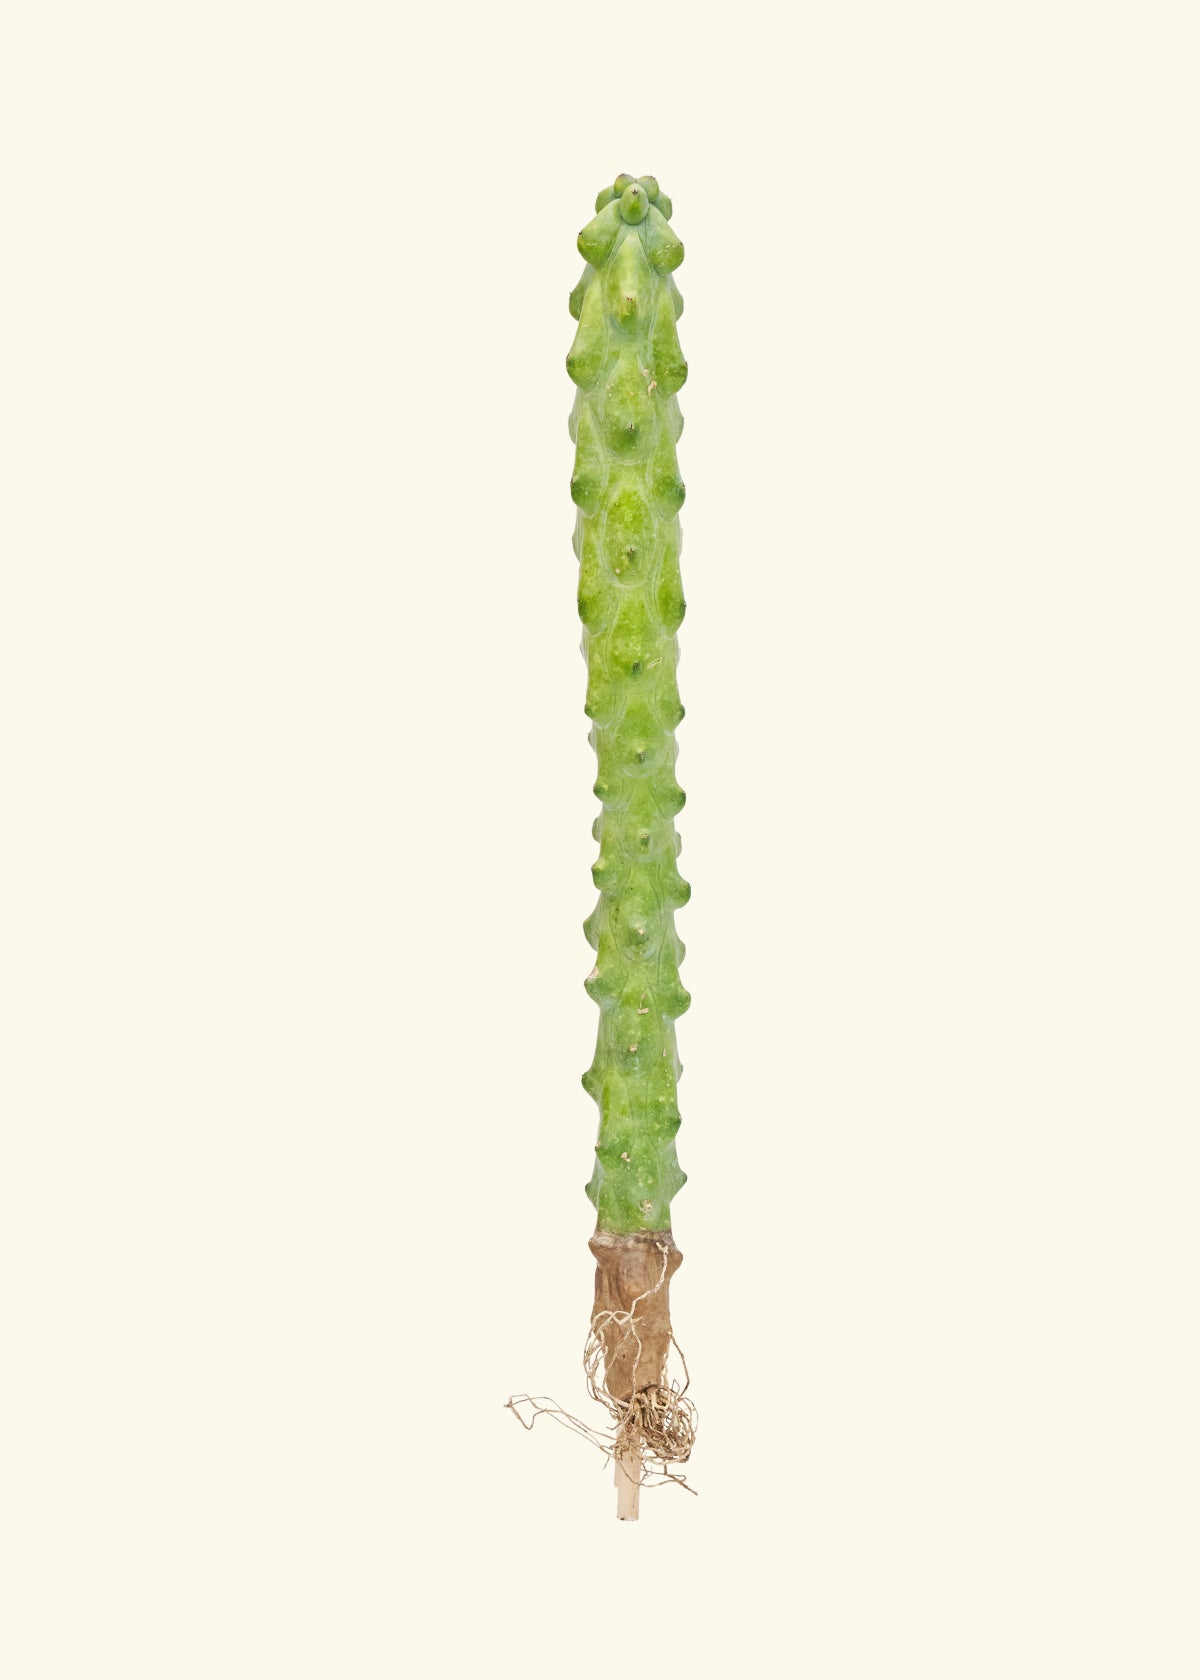 18" boob cactus